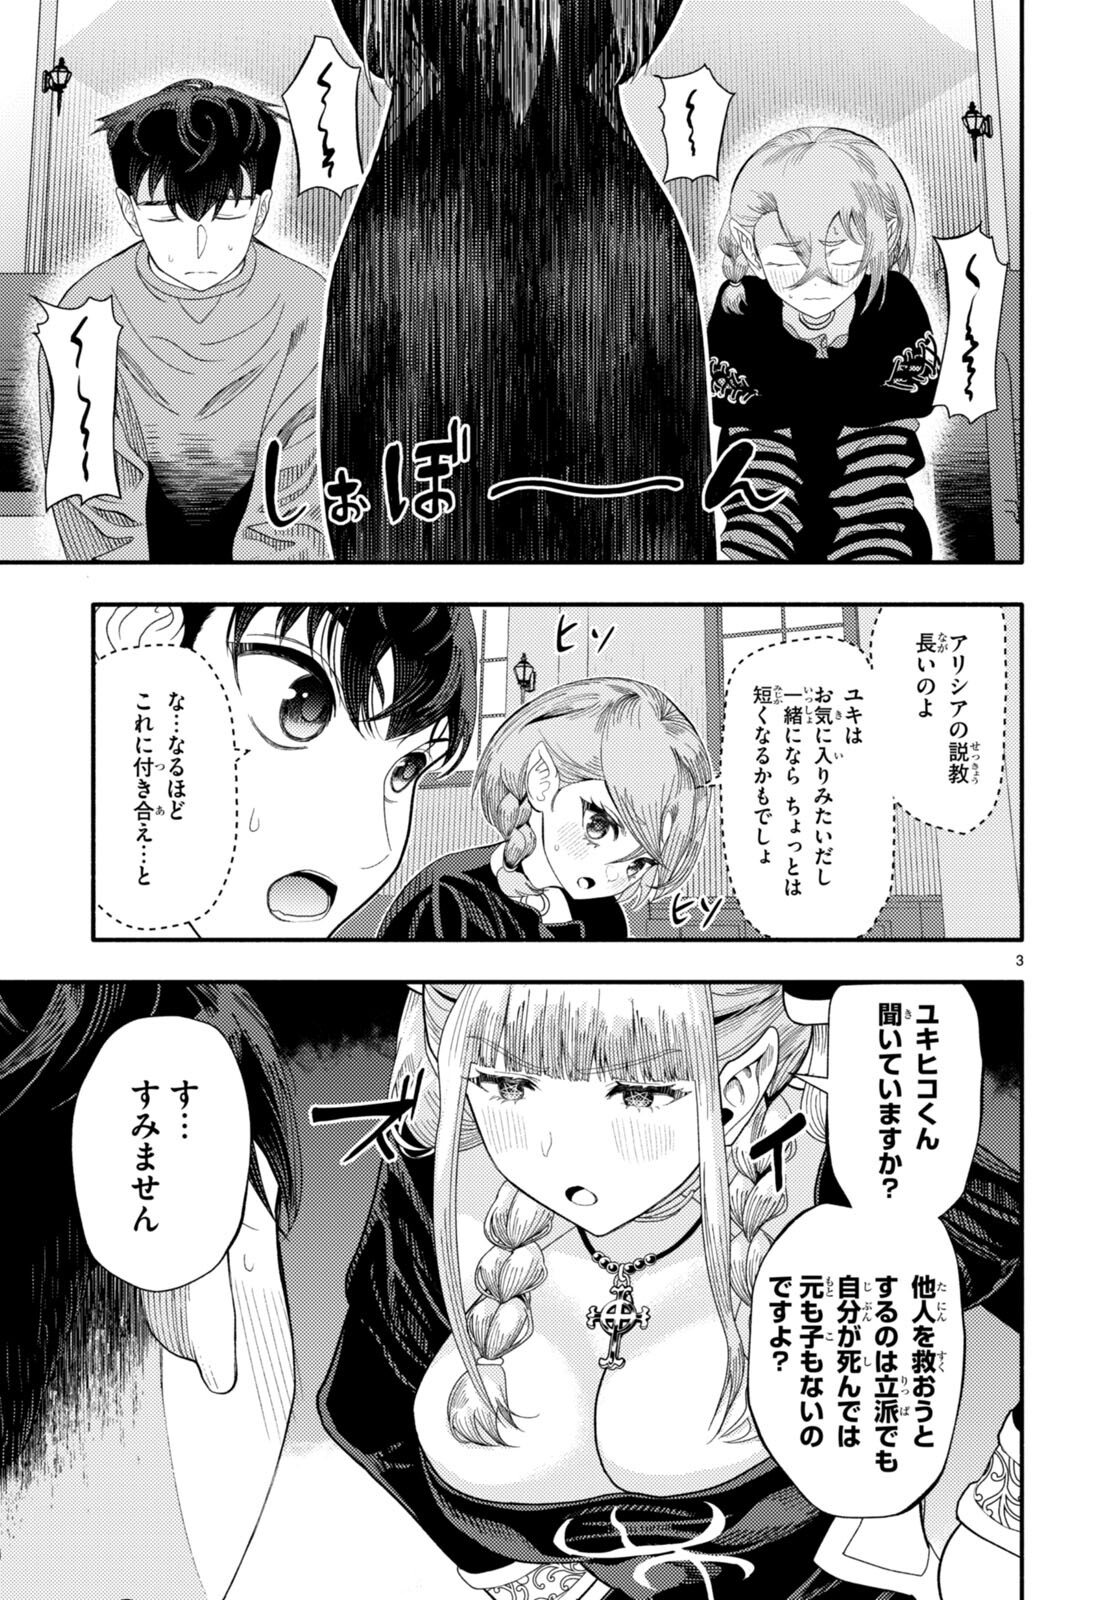 Akuma wa Rozario ni Kiss wo suru - Chapter 6 - Page 3